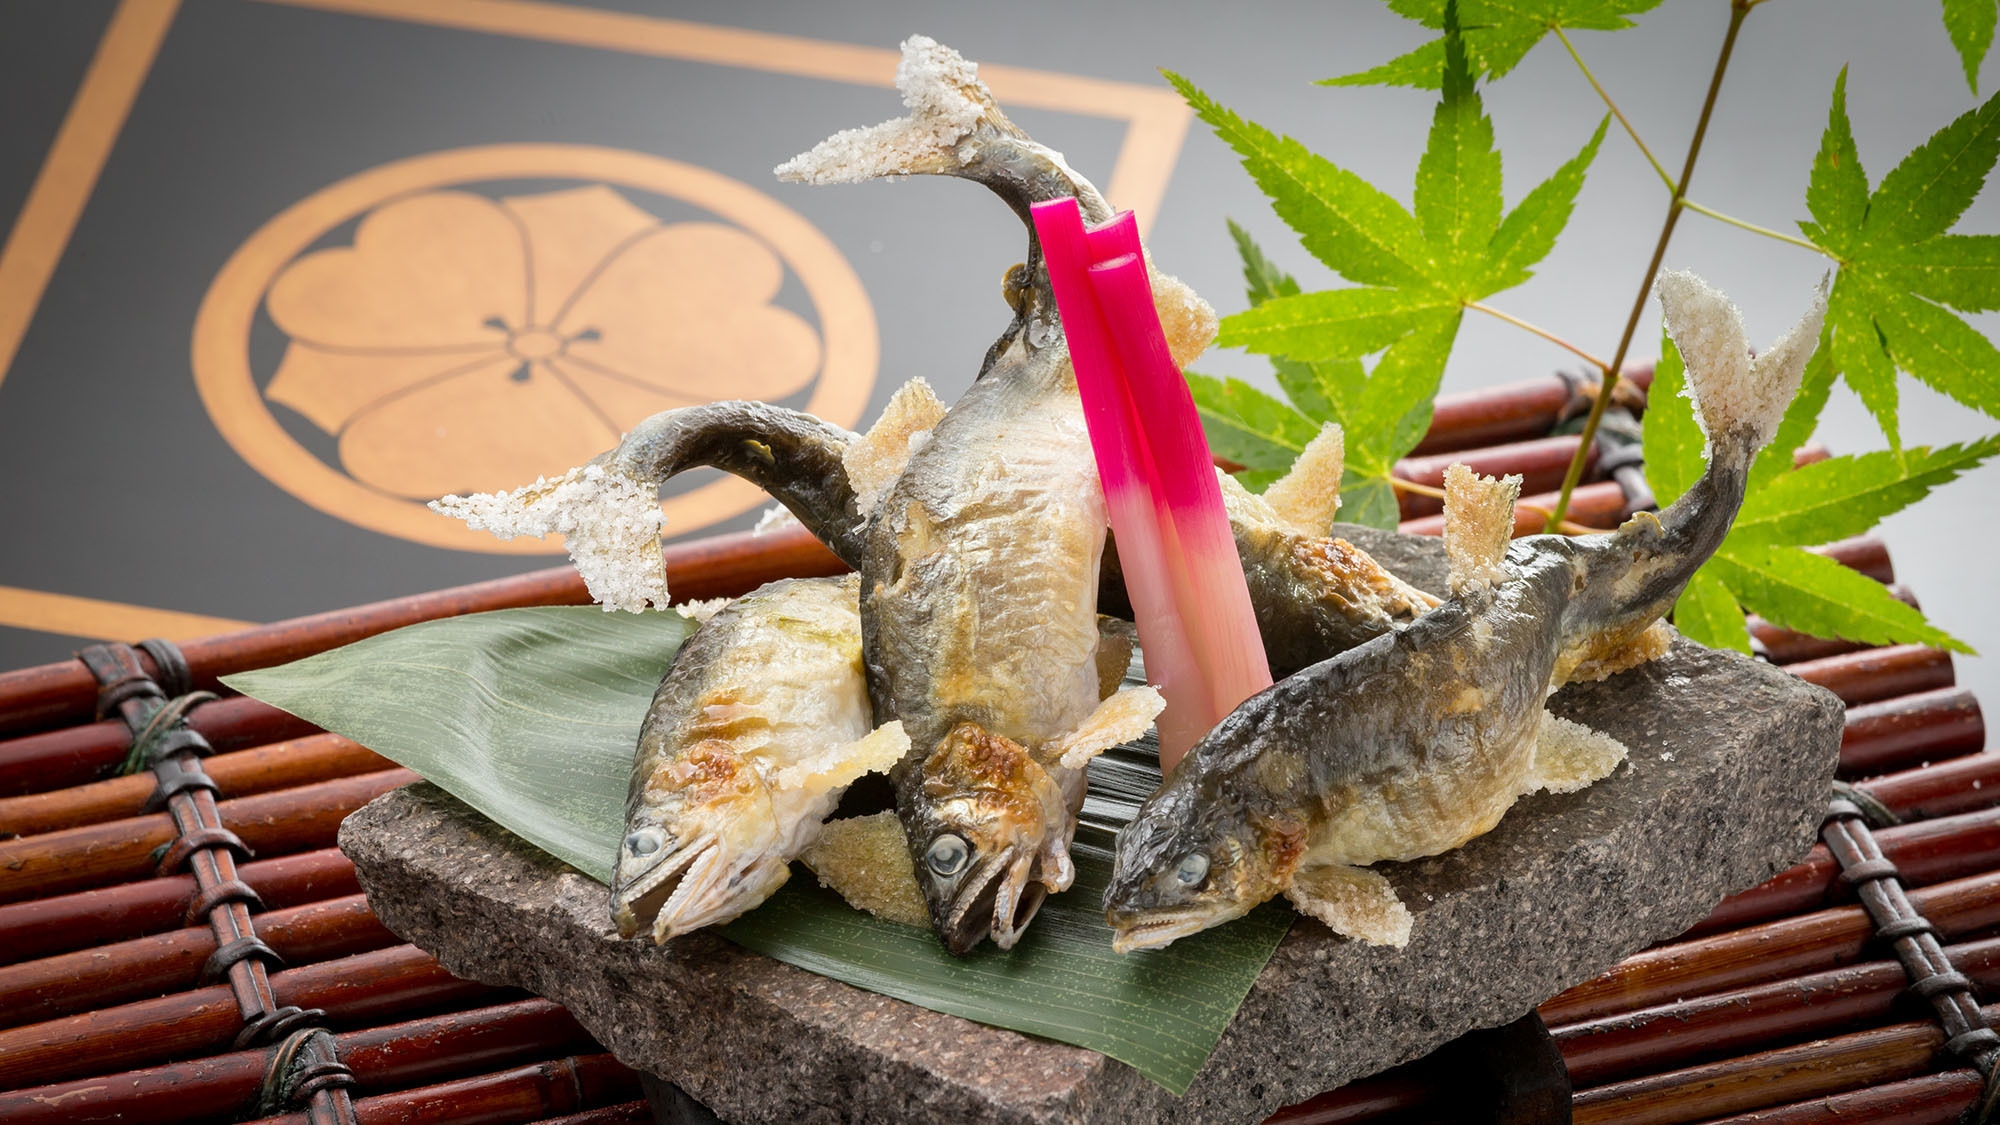 ■鮎づくし会席■「夏の香を楽しむ」川魚ひとすじのふじやが魅せる！『至極のアユ料理』を堪能